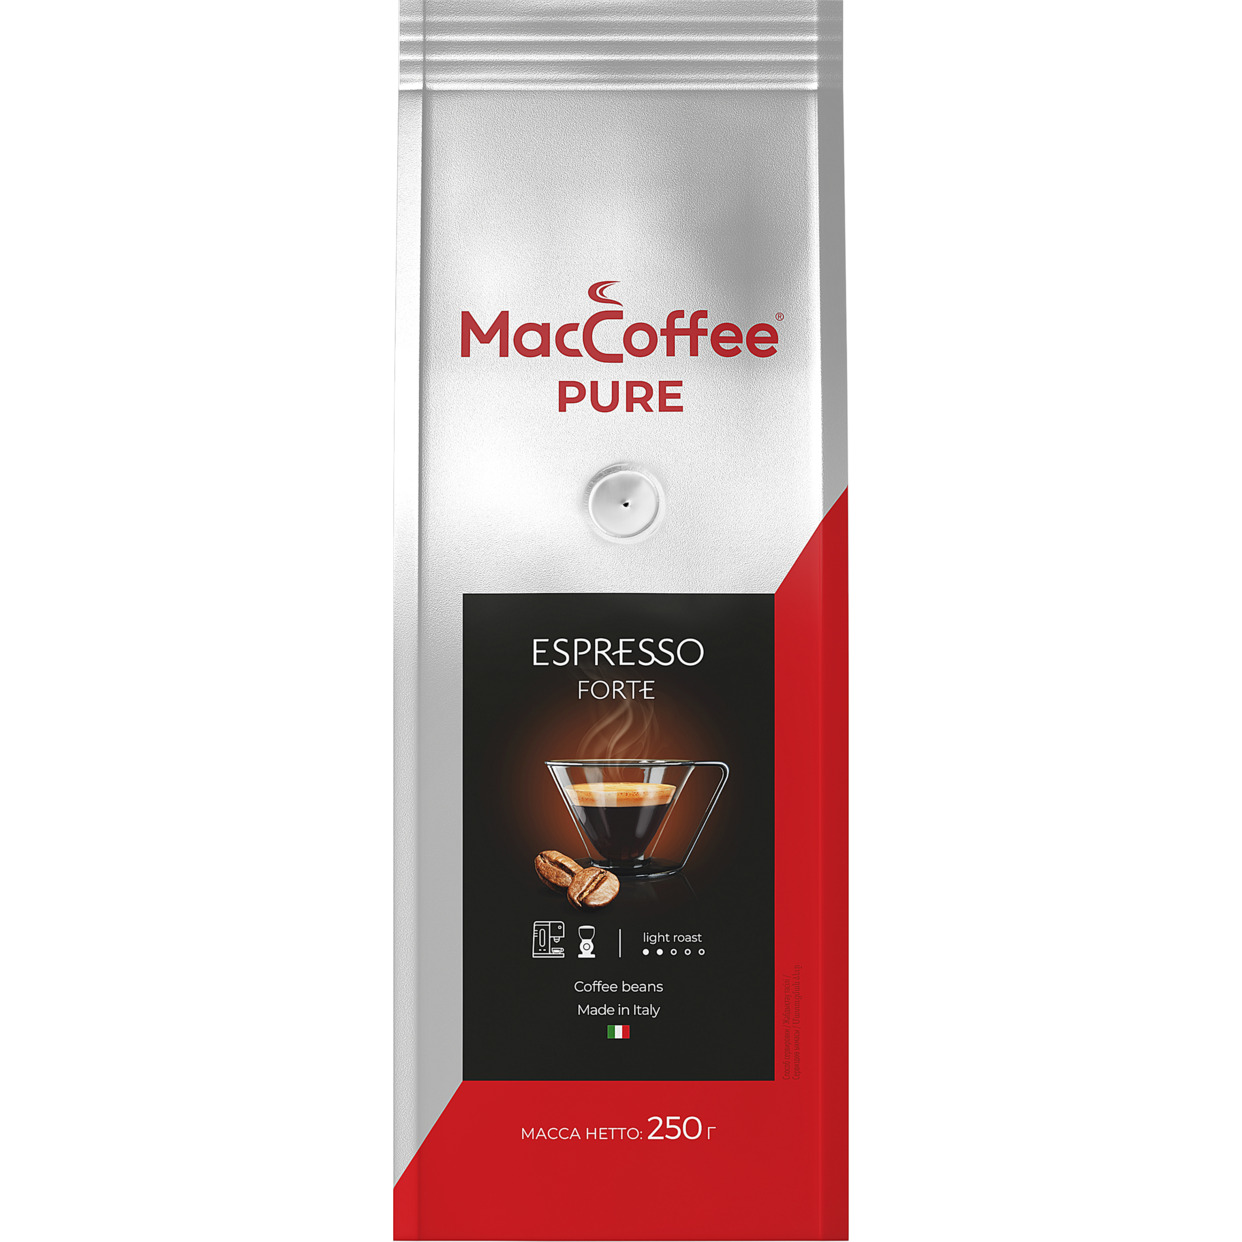 Кофе жареный натуральный в зернах MacCoffee "PURE Espresso Forte", 250г по акции в Пятерочке